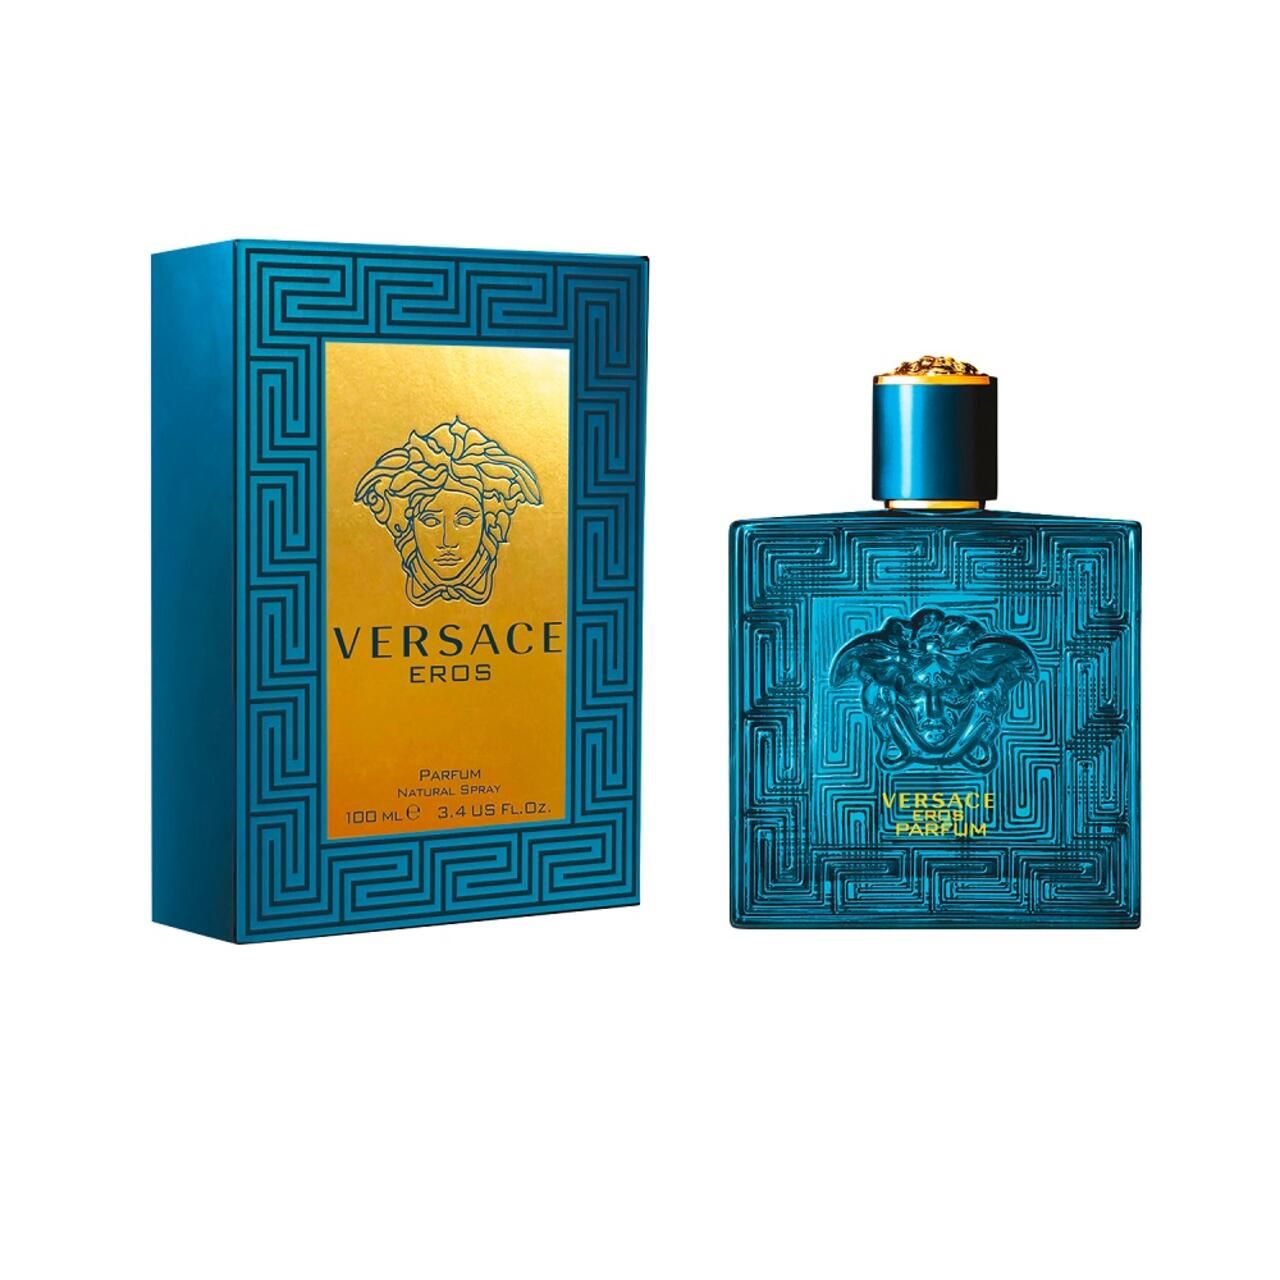 Versace, Eros Perfume Spray